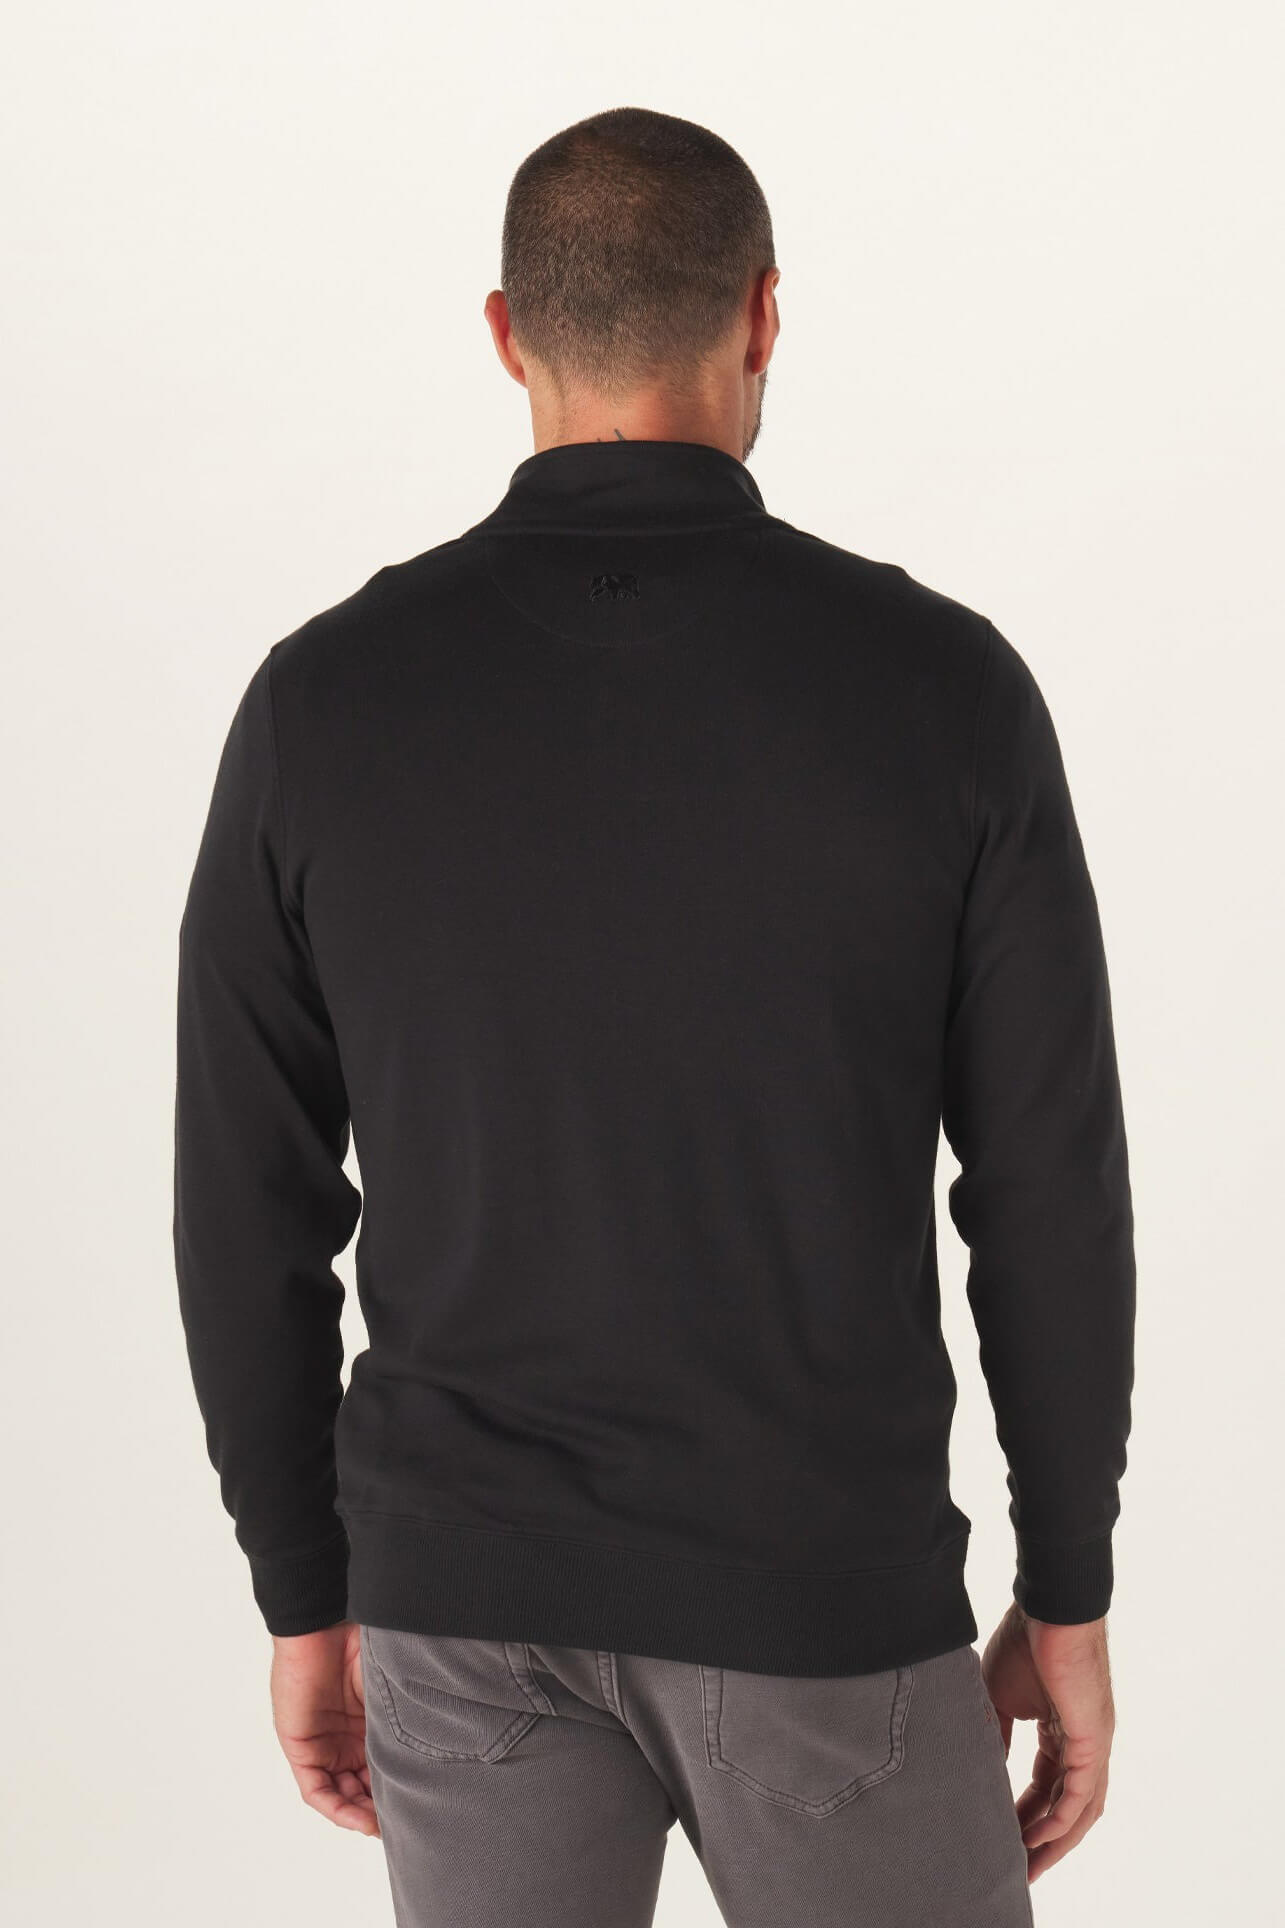 black quart zip sweatshirt for men